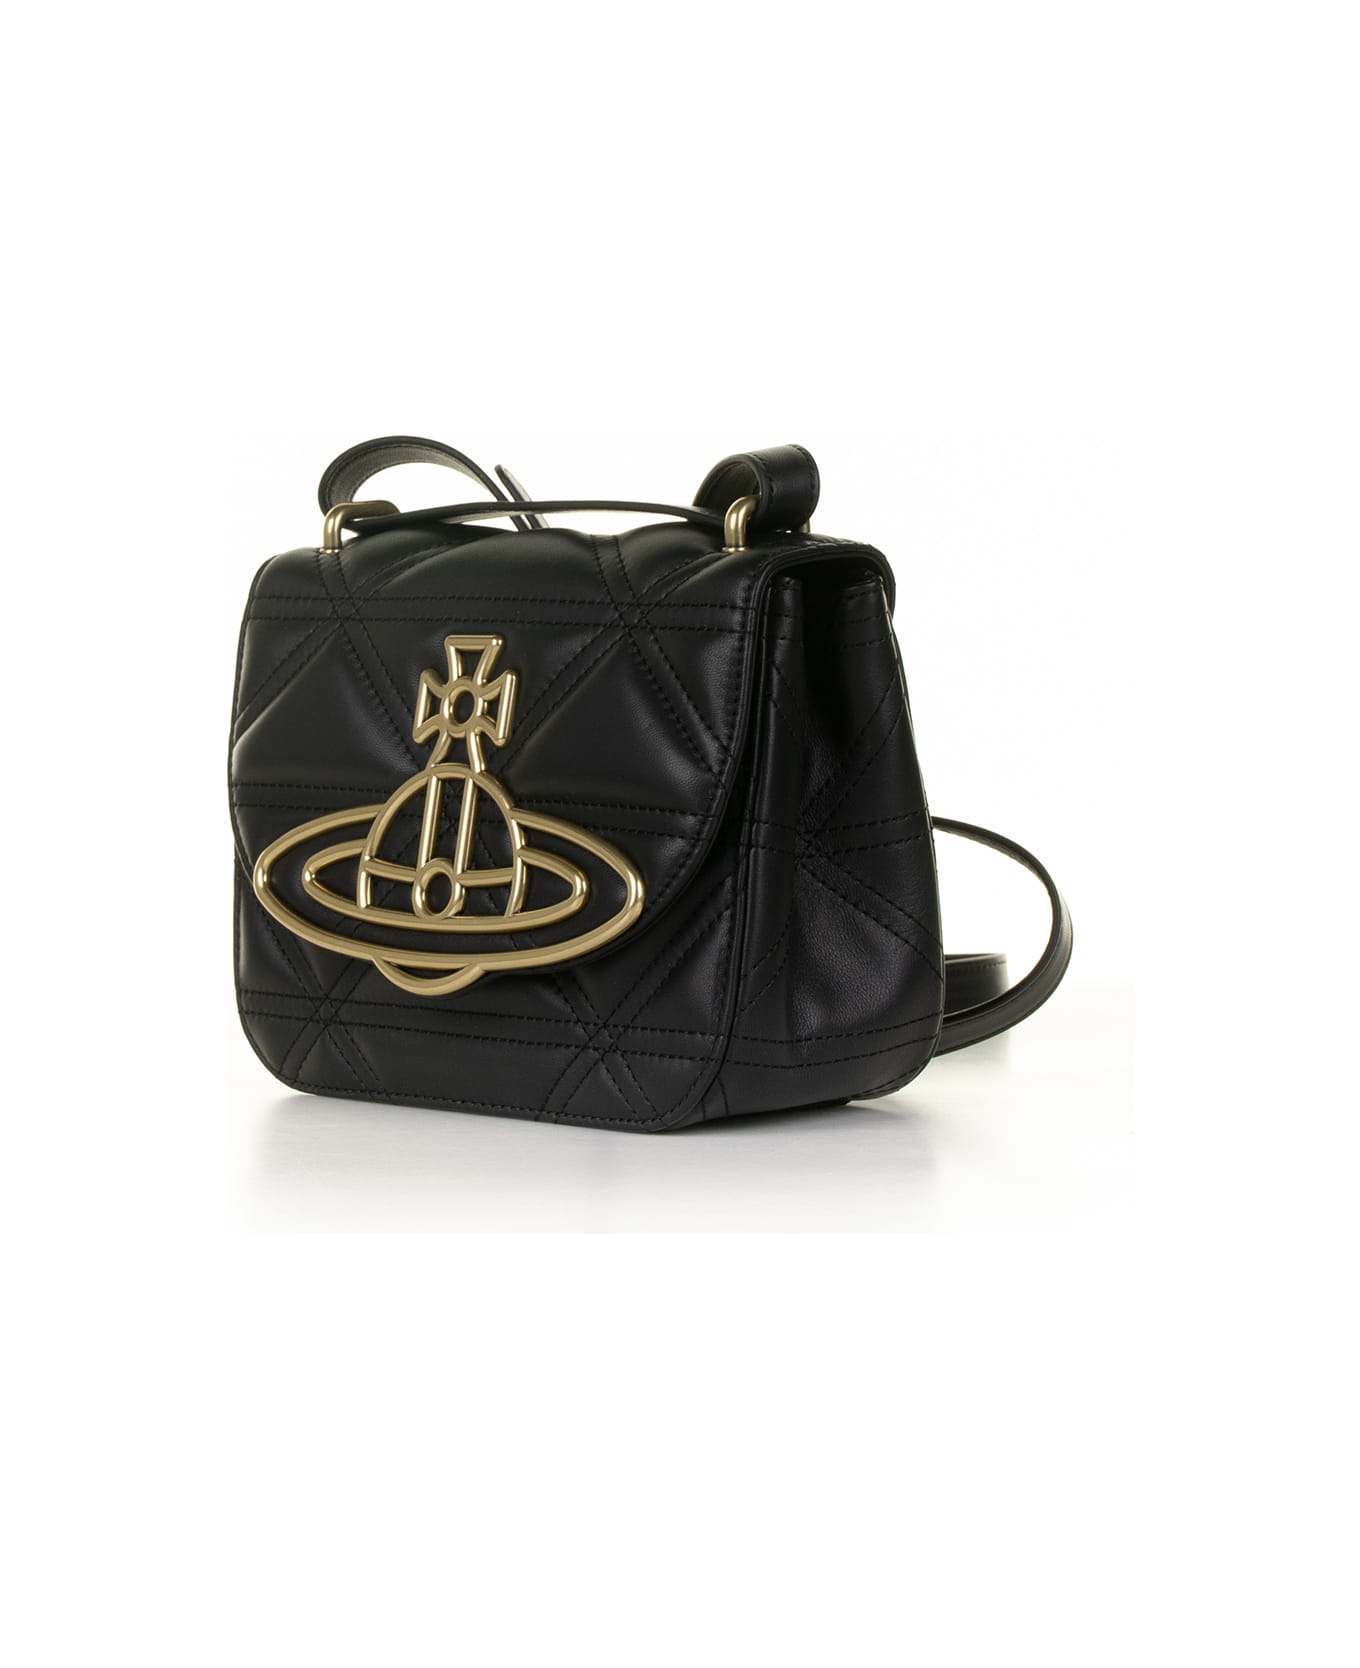 Vivienne Westwood Black Leather Shoulder Bag - BLACK